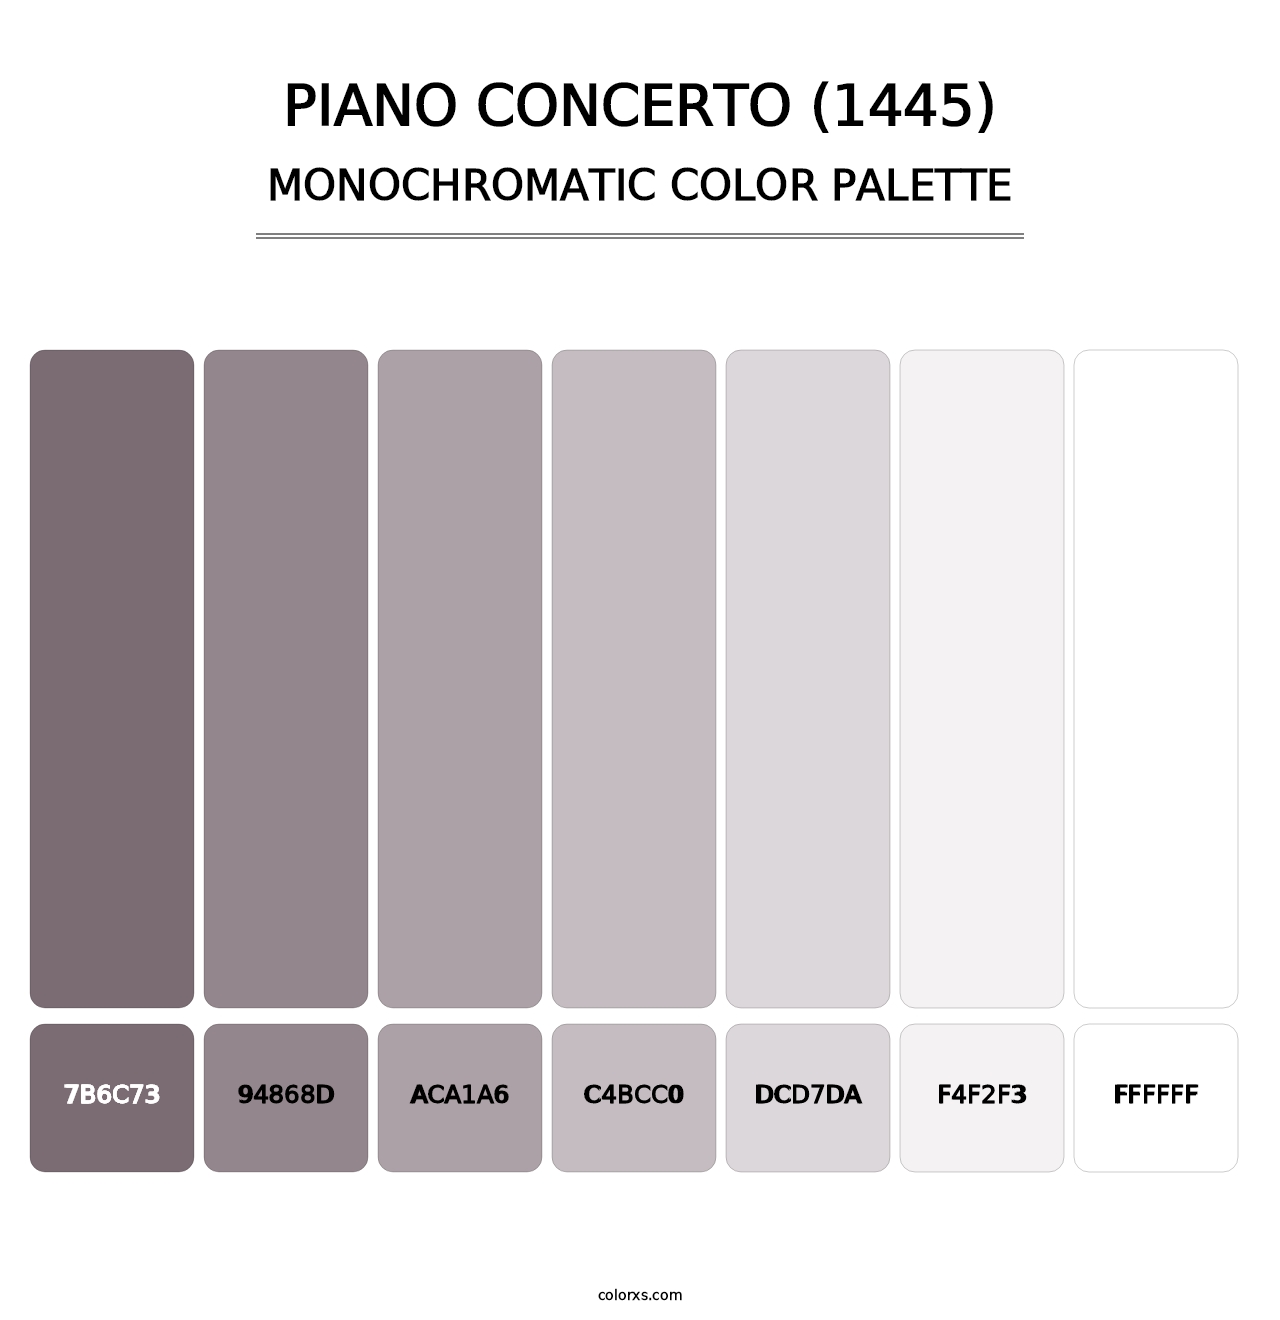 Piano Concerto (1445) - Monochromatic Color Palette